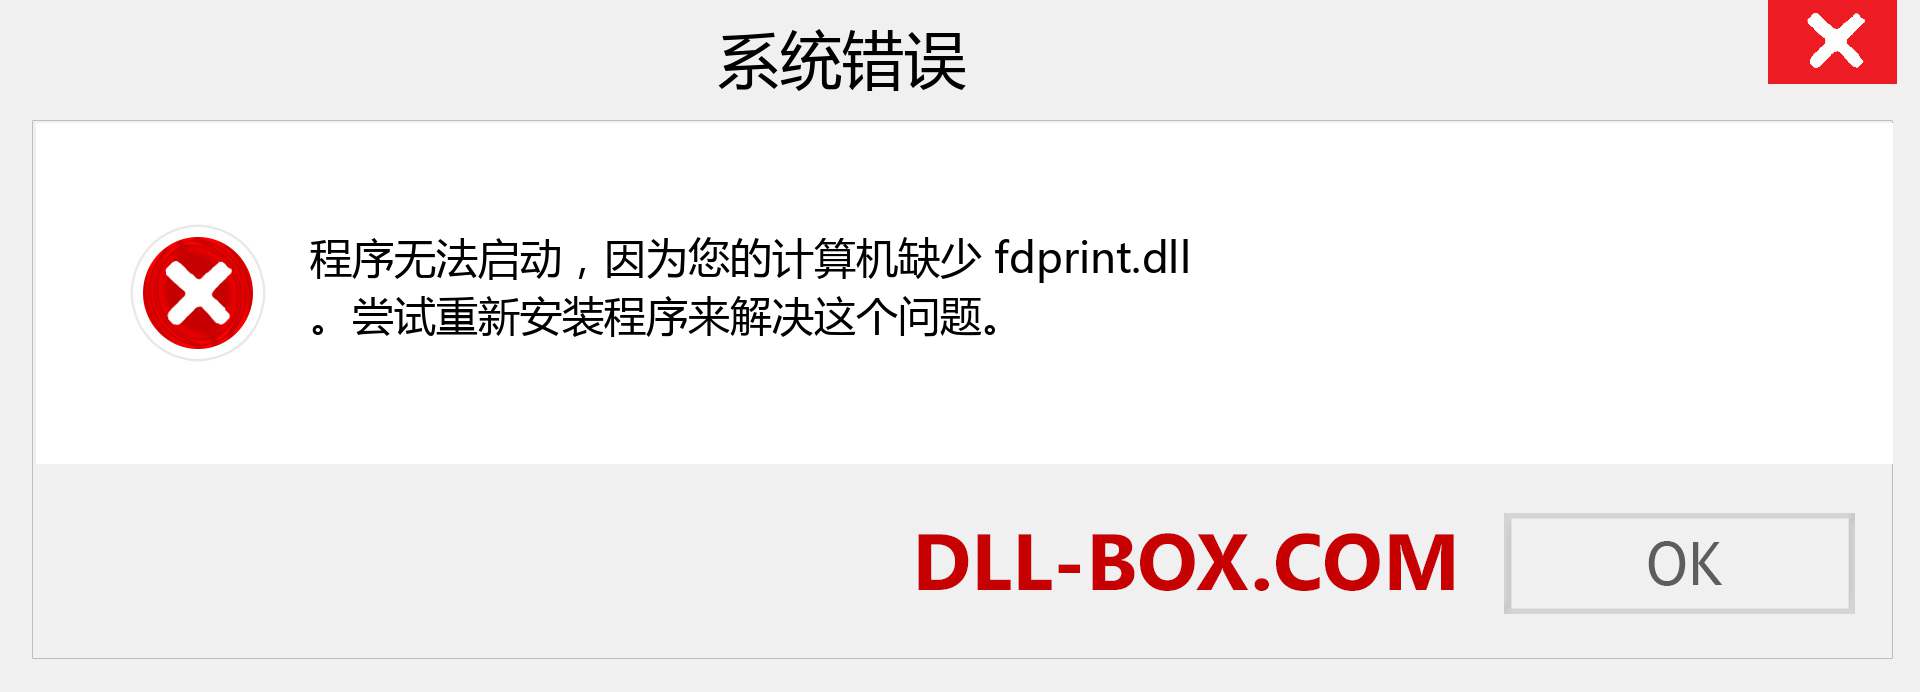 fdprint.dll 文件丢失？。 适用于 Windows 7、8、10 的下载 - 修复 Windows、照片、图像上的 fdprint dll 丢失错误